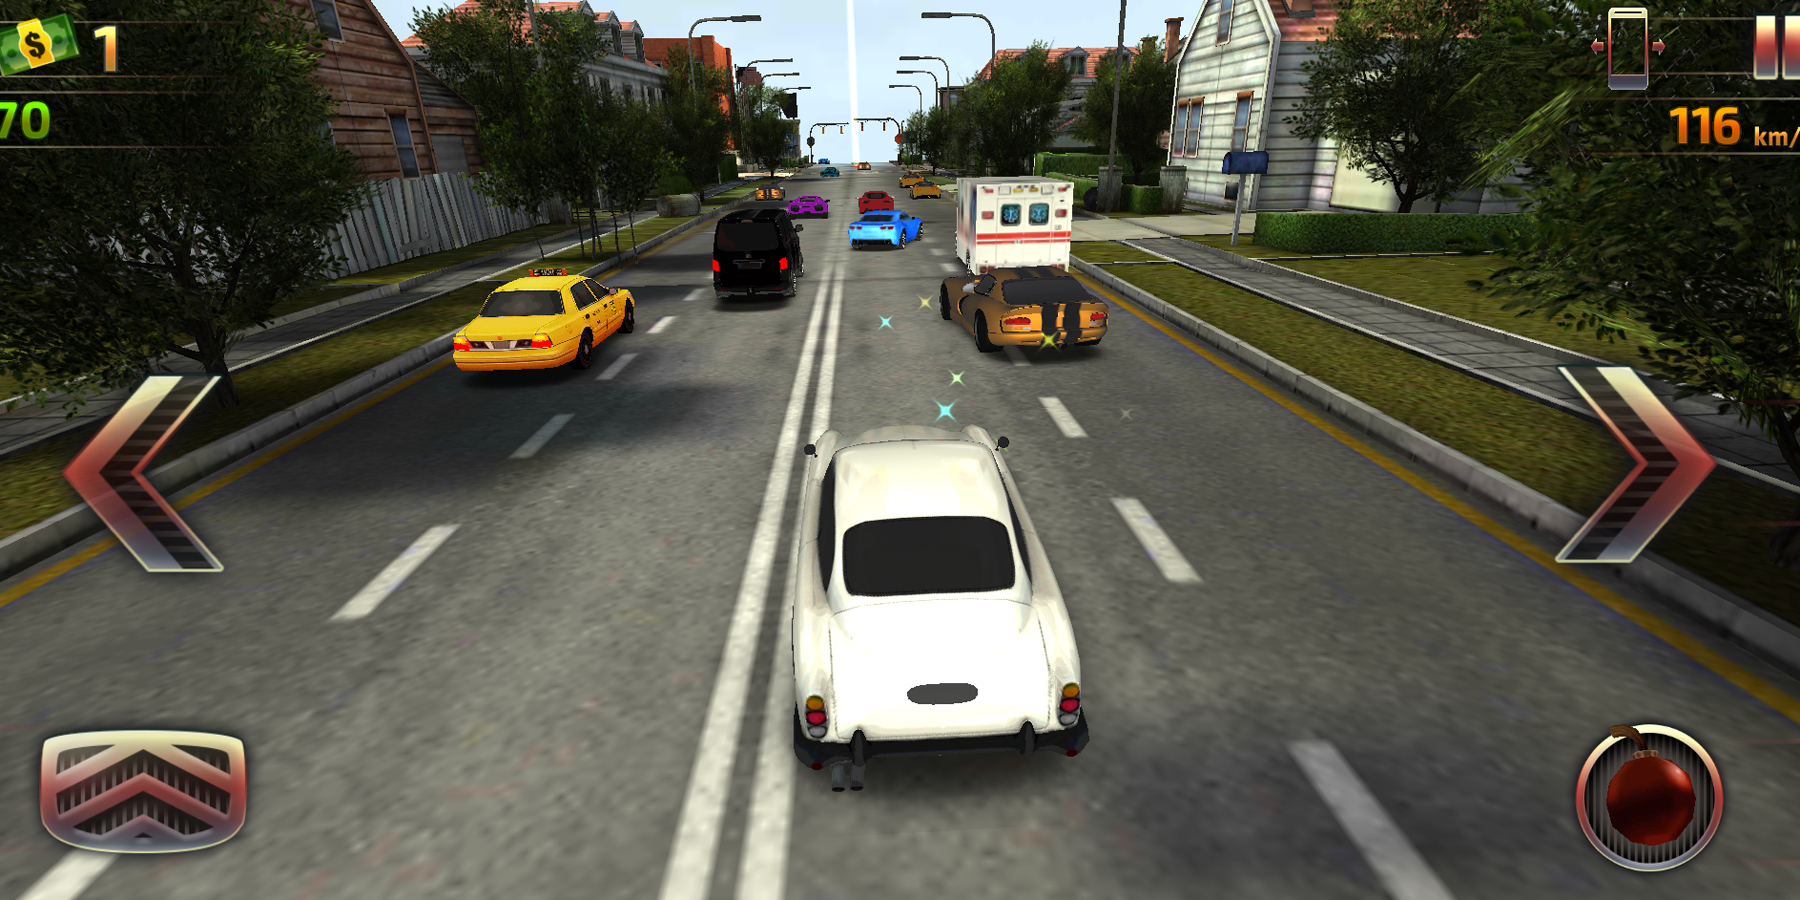 Screenshot 1 of Вождение автомобиля: гонки на высоких скоростях 1.0.0